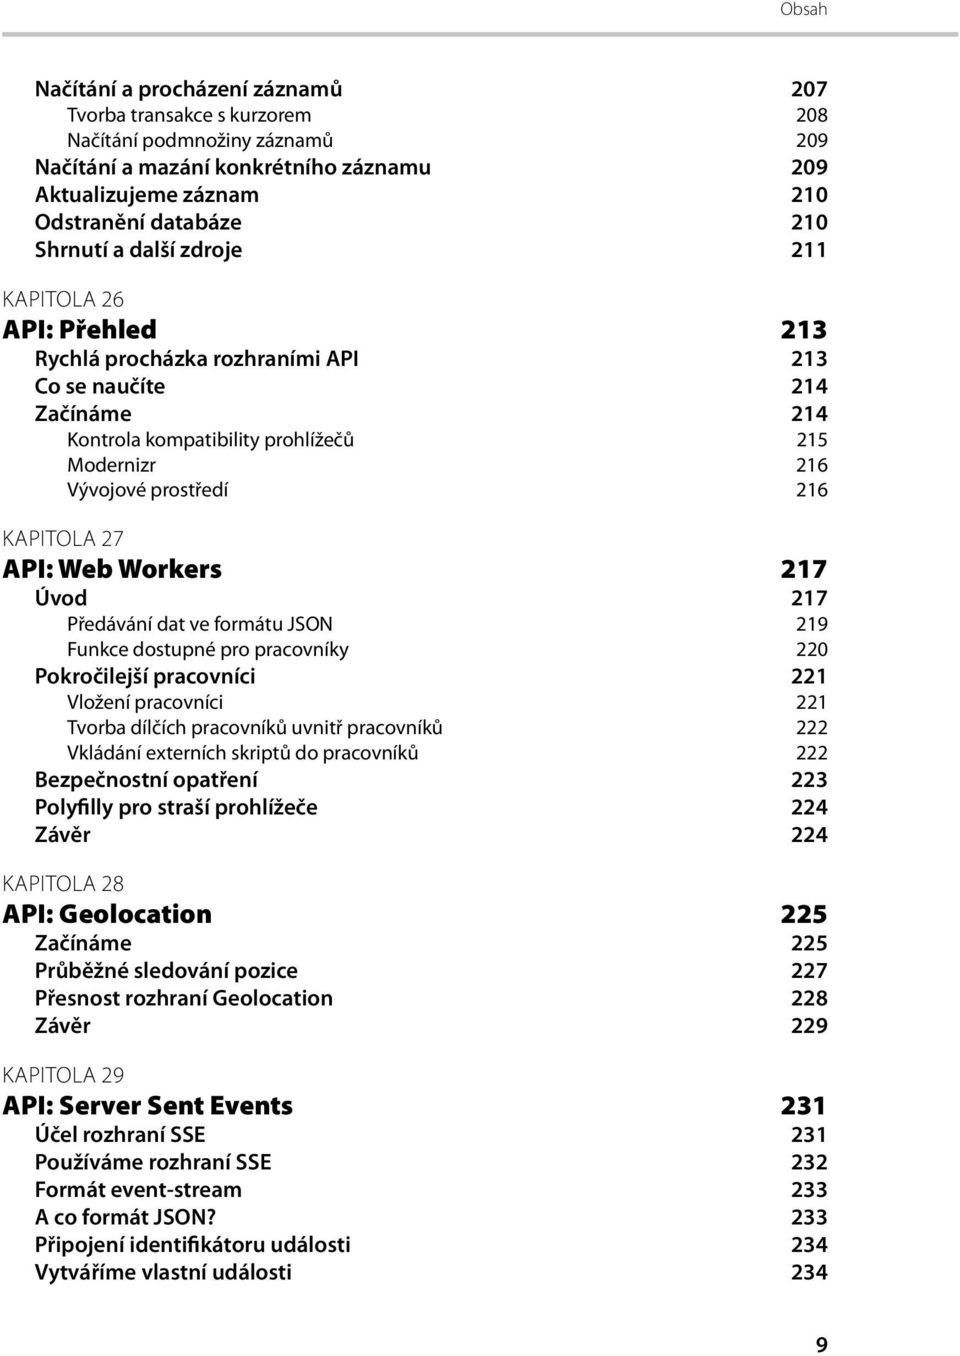 API: Web Workers 217 Úvod 217 Předávání dat ve formátu JSON 219 Funkce dostupné pro pracovníky 220 Pokročilejší pracovníci 221 Vložení pracovníci 221 Tvorba dílčích pracovníků uvnitř pracovníků 222